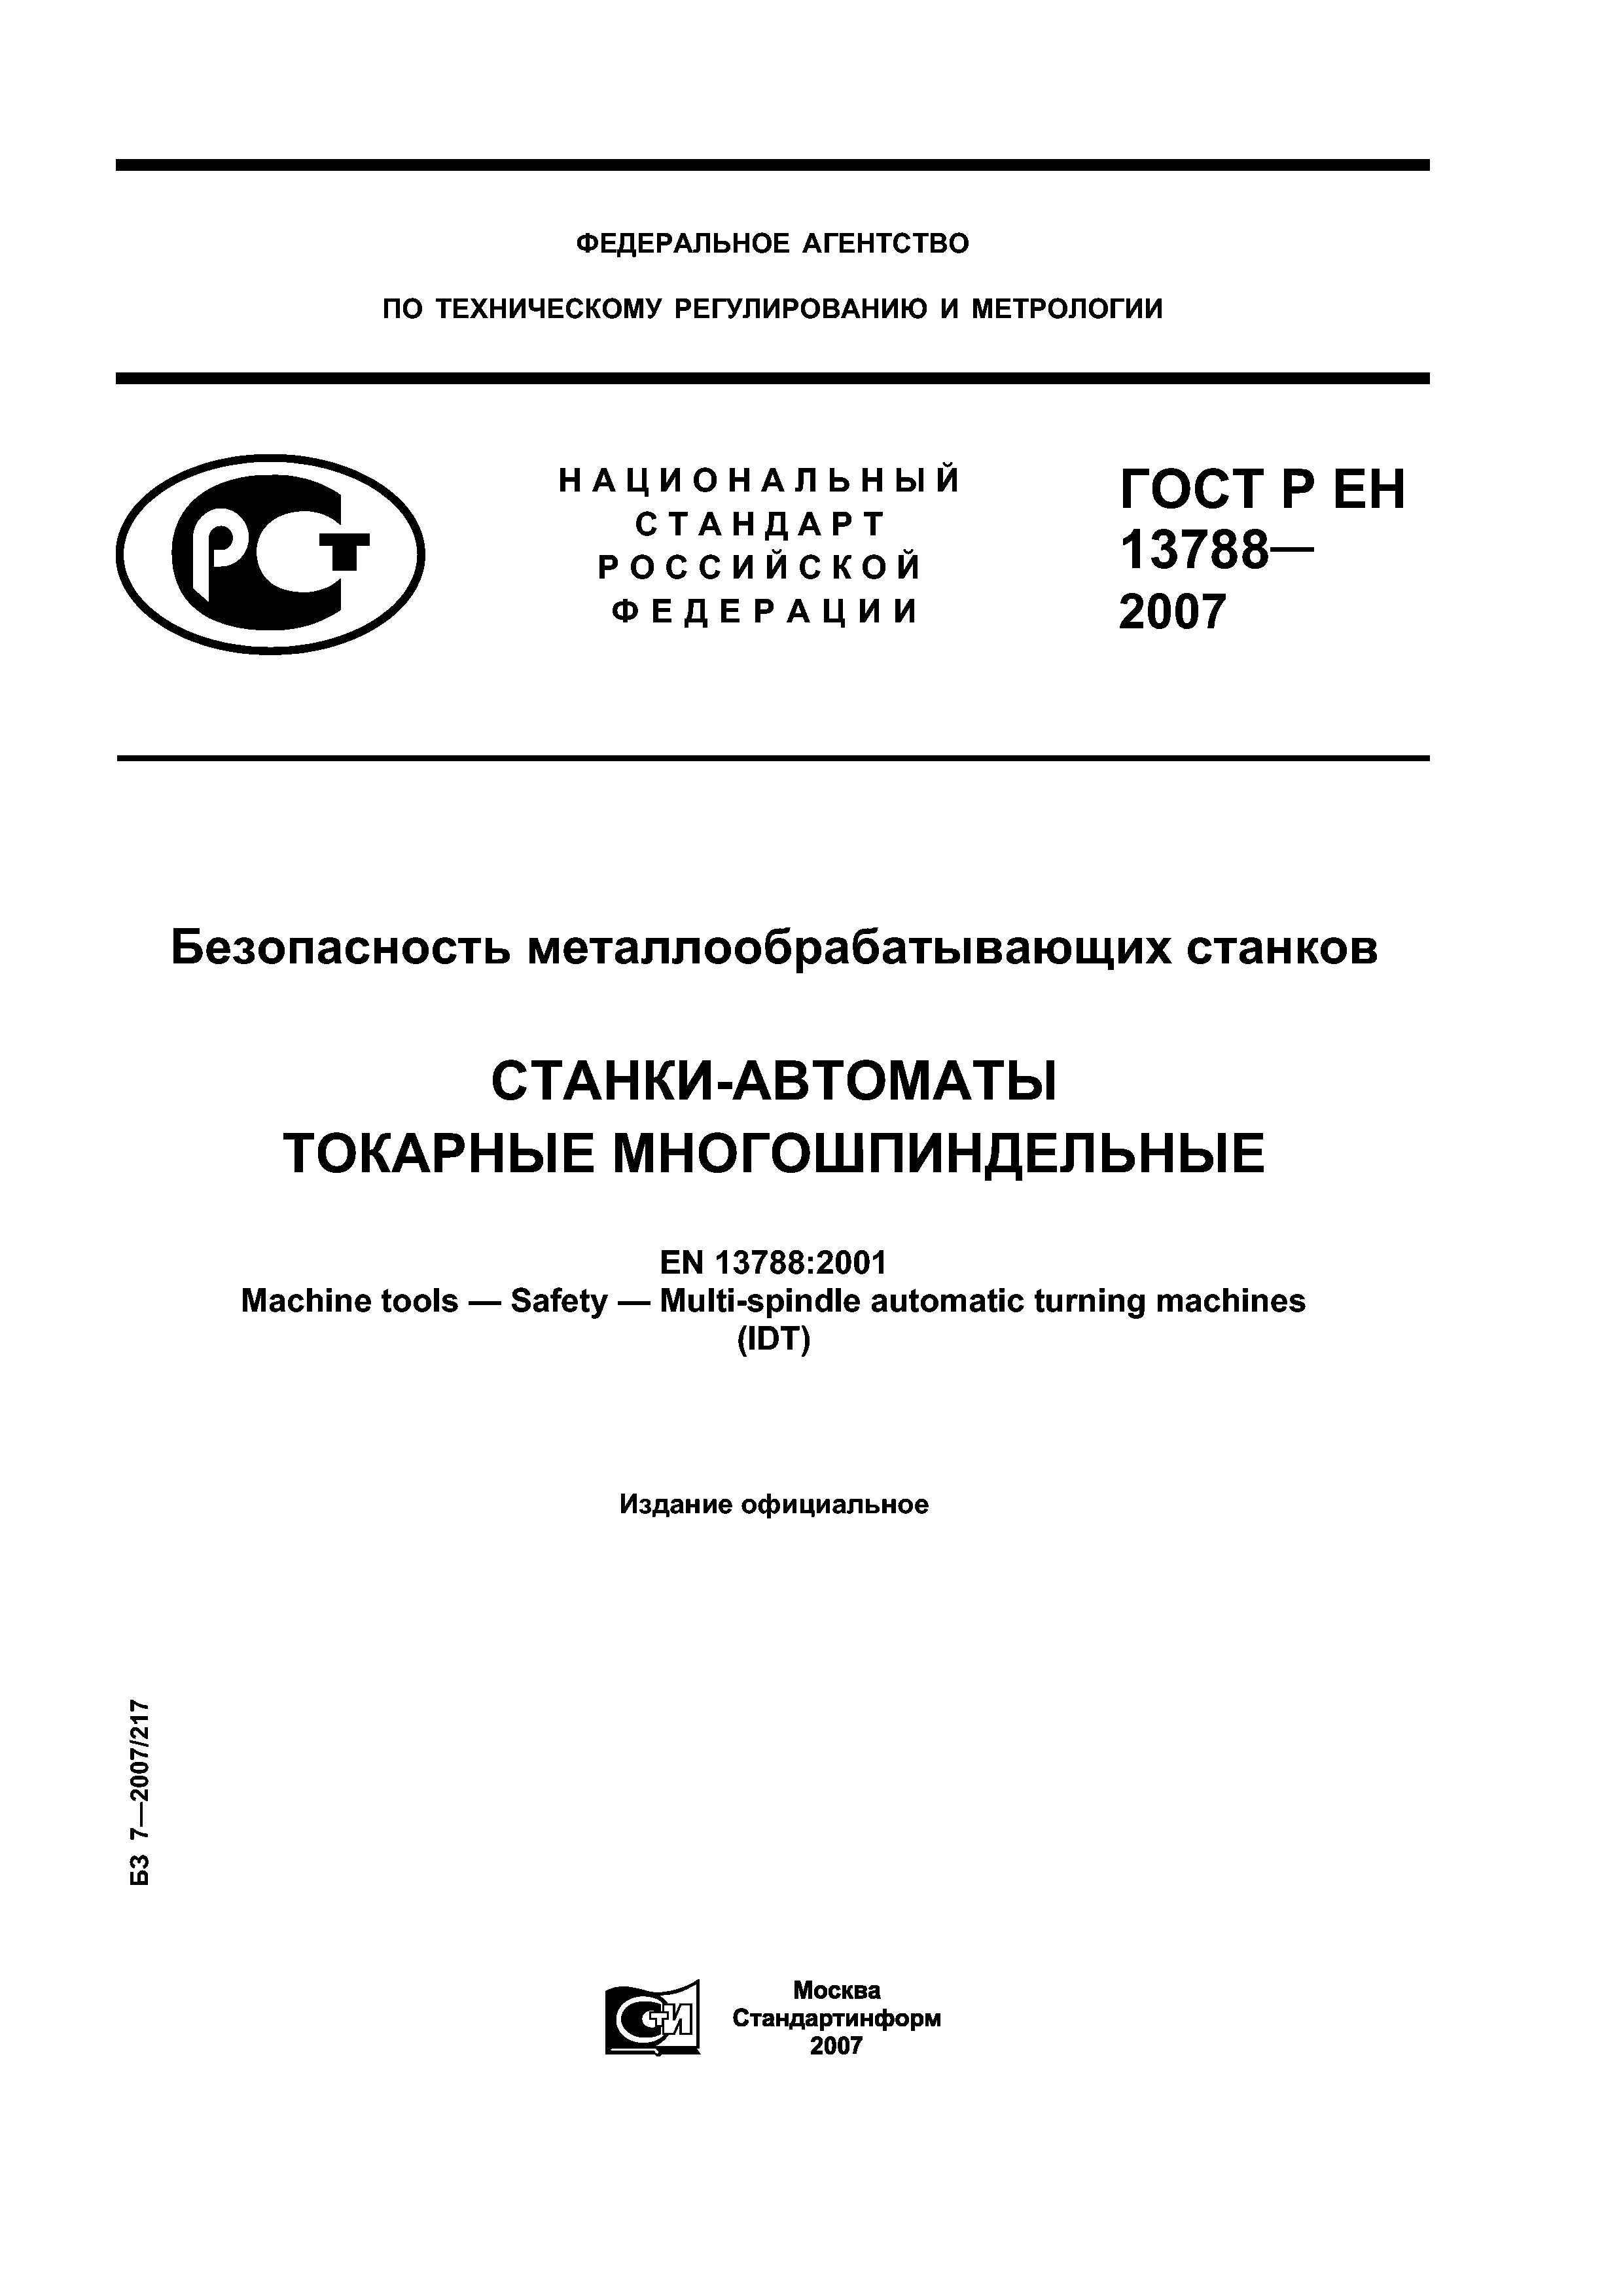 ГОСТ Р ЕН 13788-2007